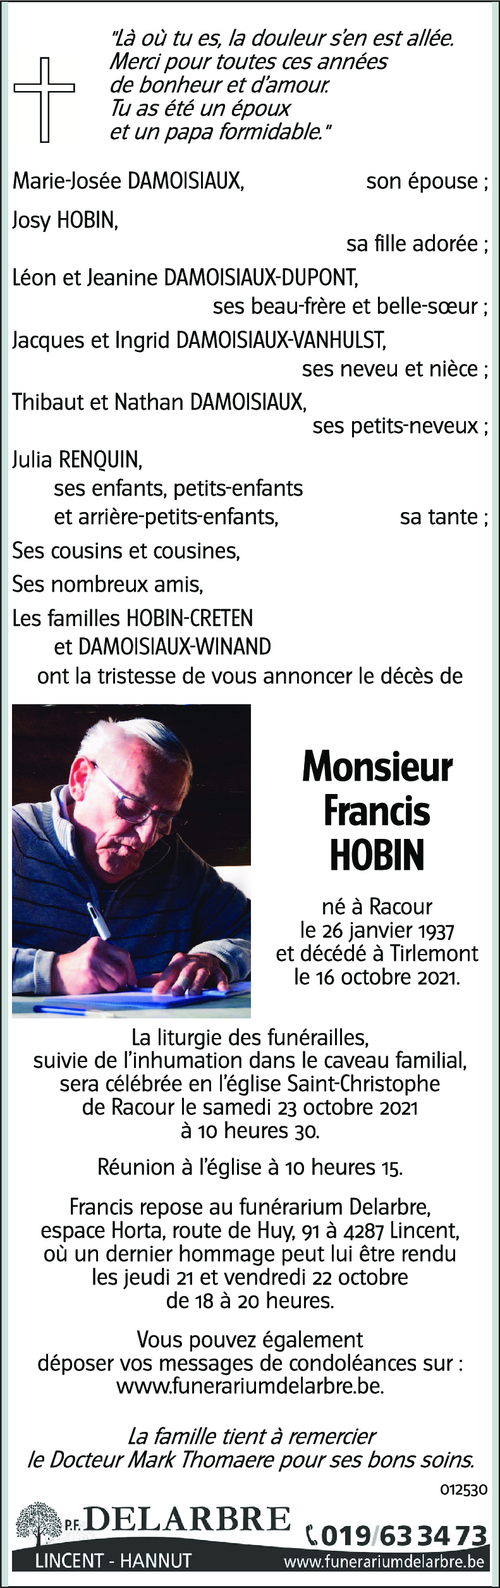 Francis HOBIN